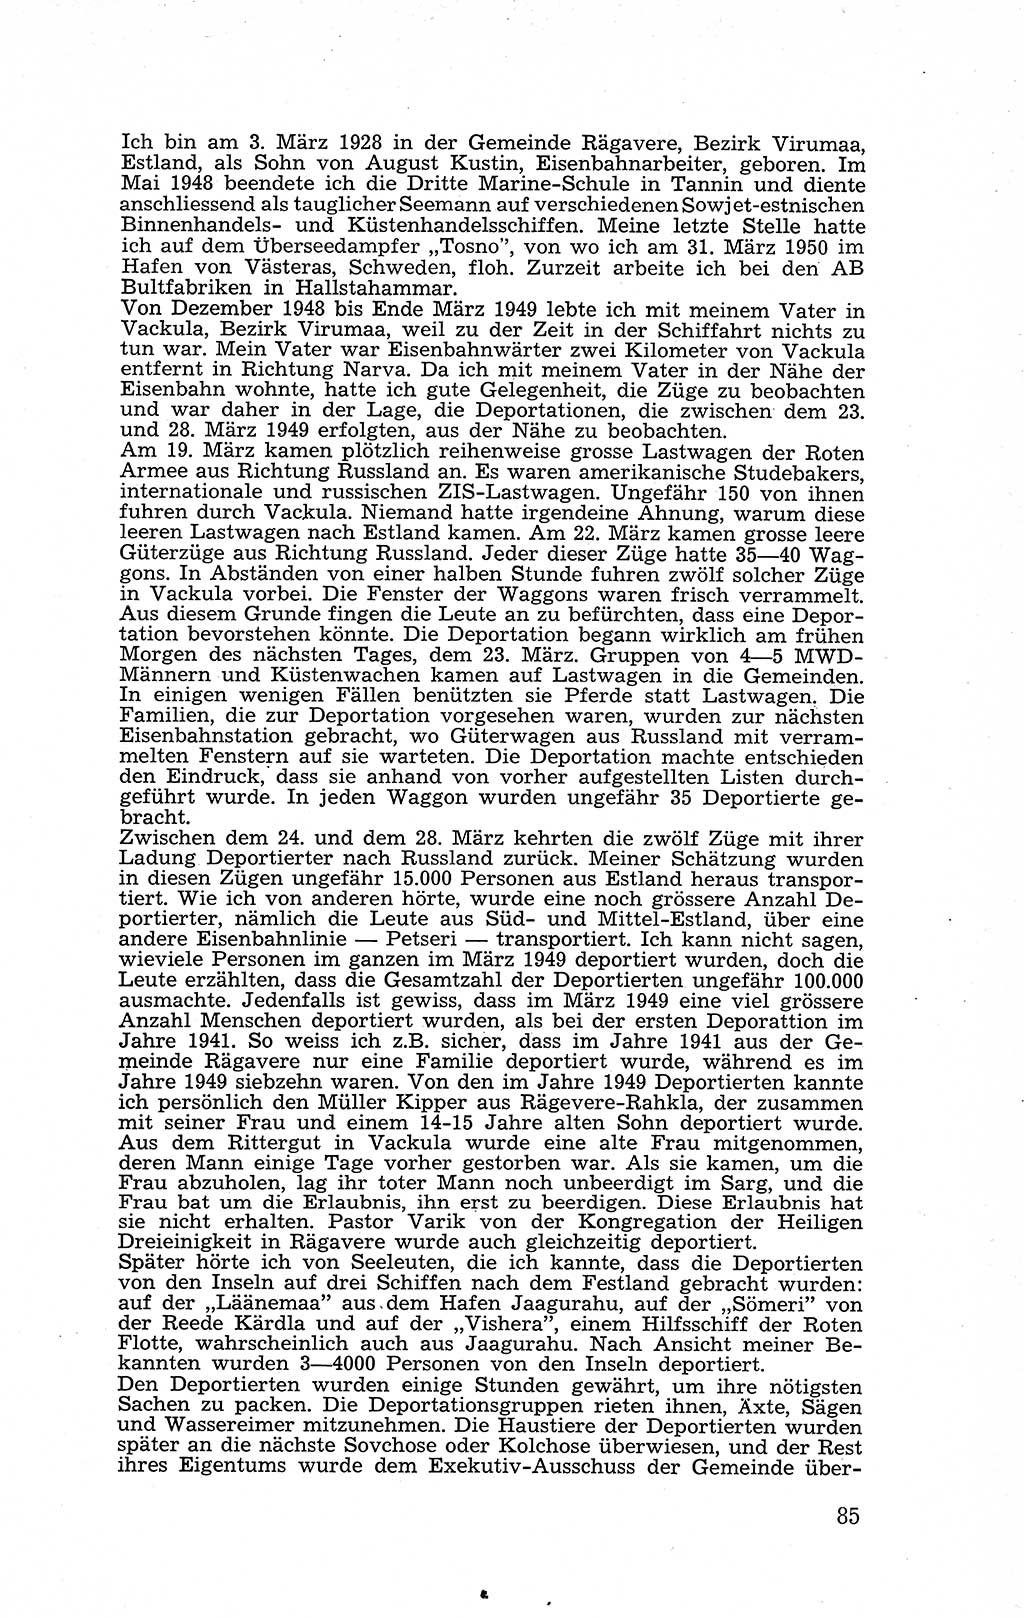 Recht in Fesseln, Dokumente, Internationale Juristen-Kommission [Bundesrepublik Deutschland (BRD)] 1955, Seite 85 (R. Dok. IJK BRD 1955, S. 85)